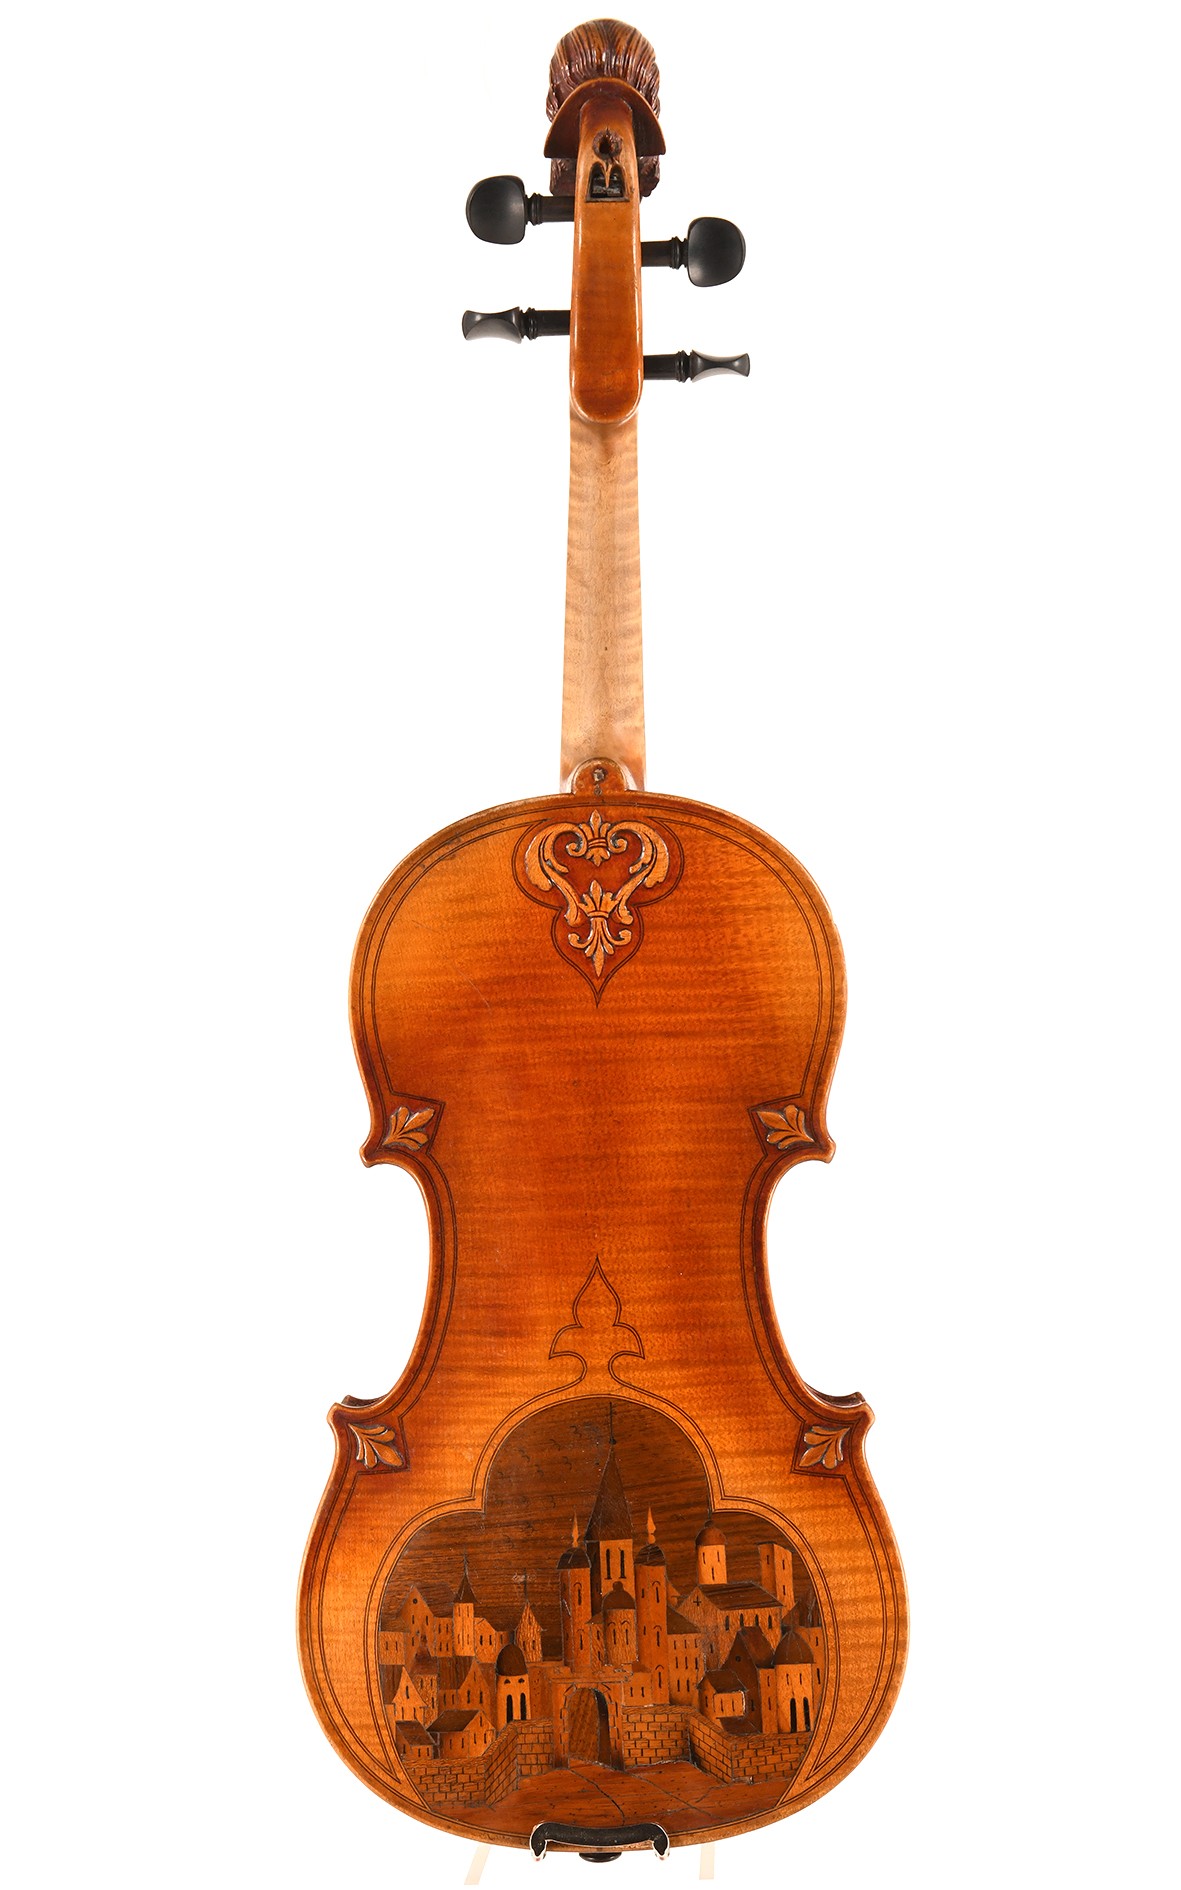 Antique French violin, Tiefenbrucker model around 1890